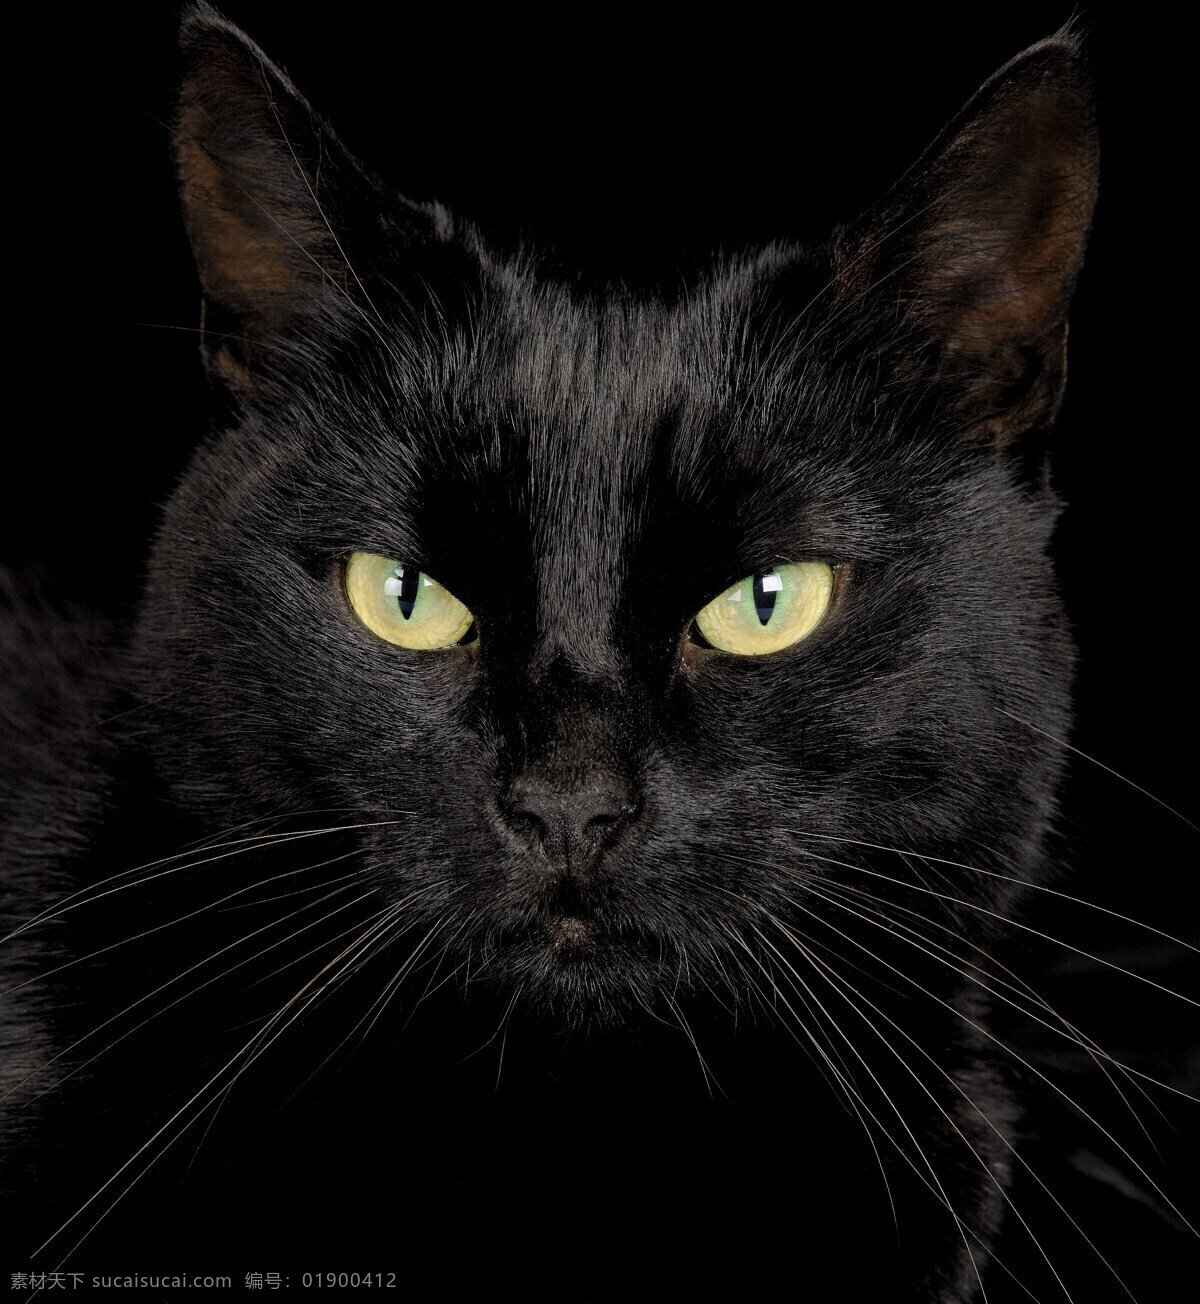 黑猫 宠物猫 猫 萌宠 宠物 萌猫 小猫 猫咪 猫猫 宠物素材合集 家禽家畜 生物世界